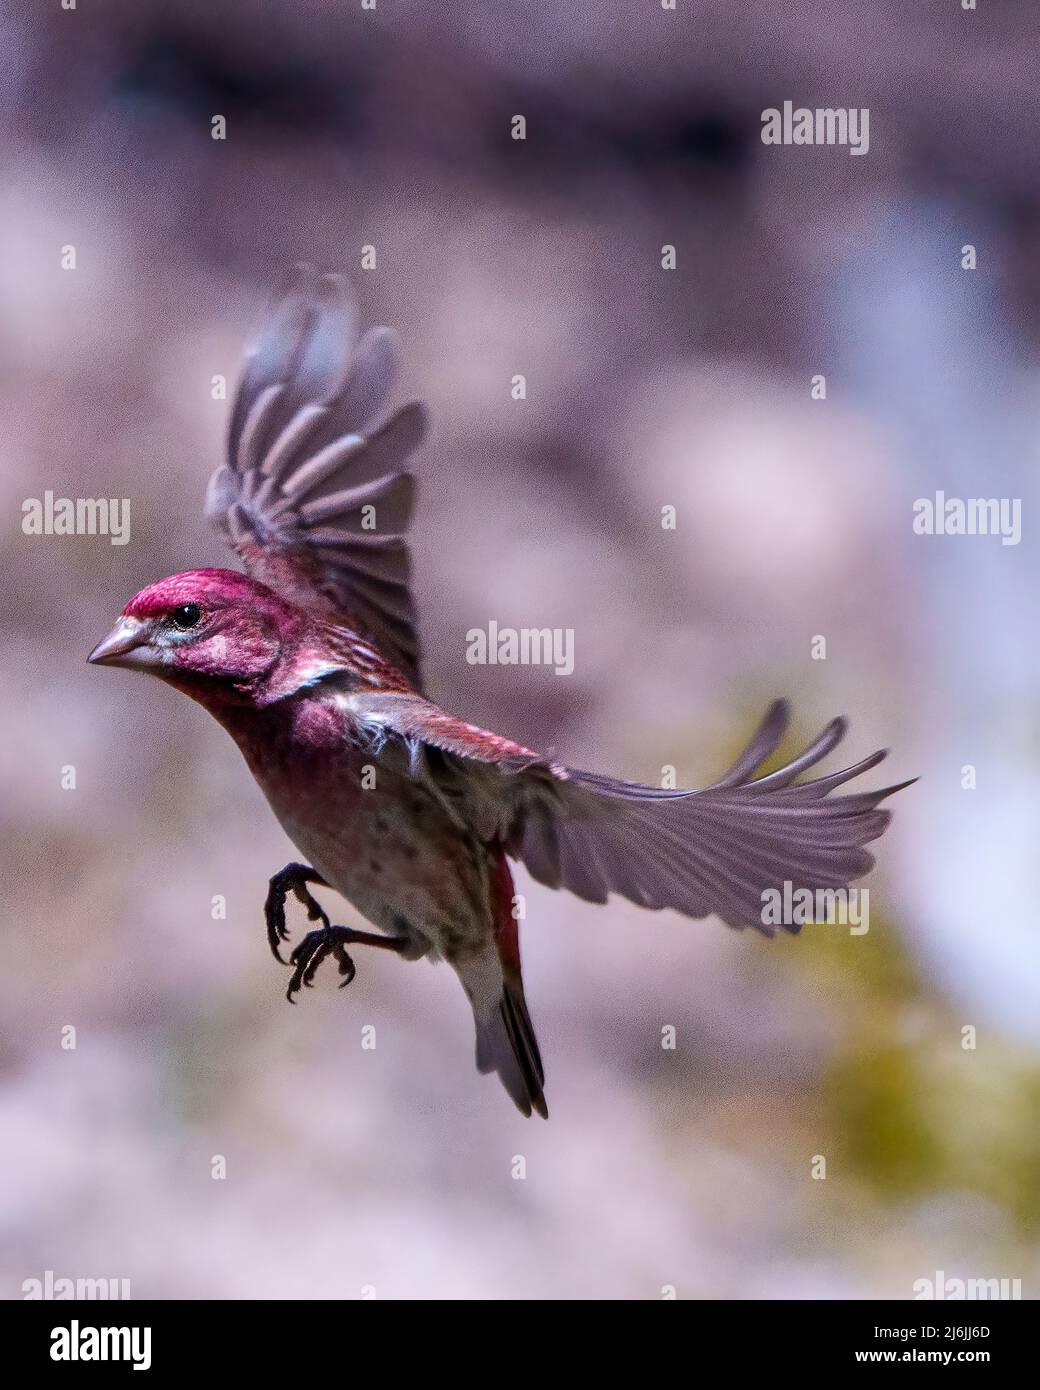 Finch macho volando con sus hermosas alas de color rojo con un fondo borroso en su entorno y hábitat circundante. Vuelo de aves. Foto de stock